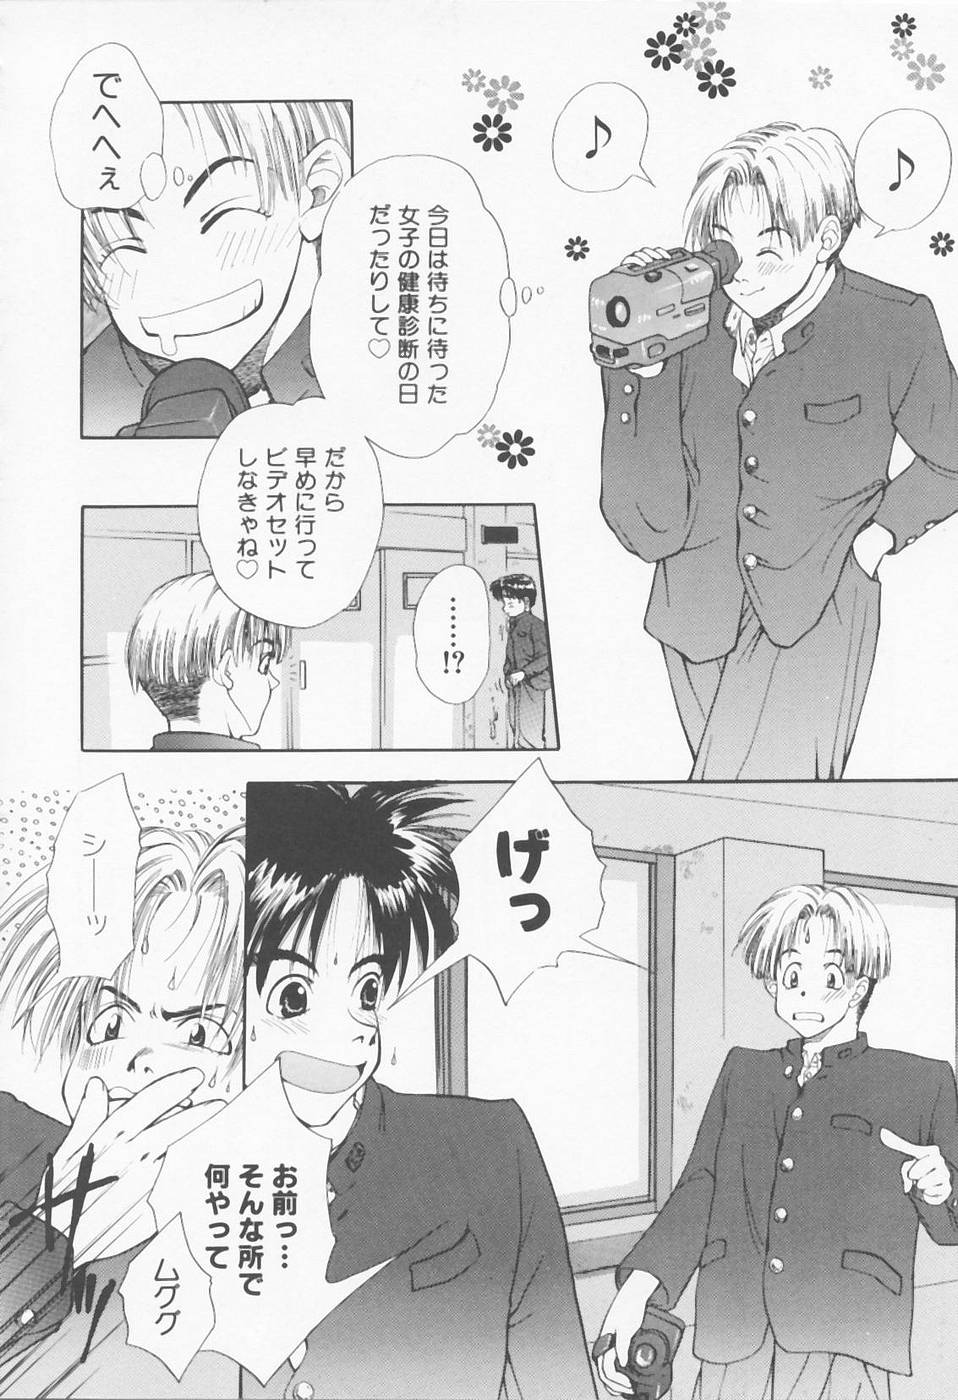 [Sensouji Kinoto] Call page 42 full